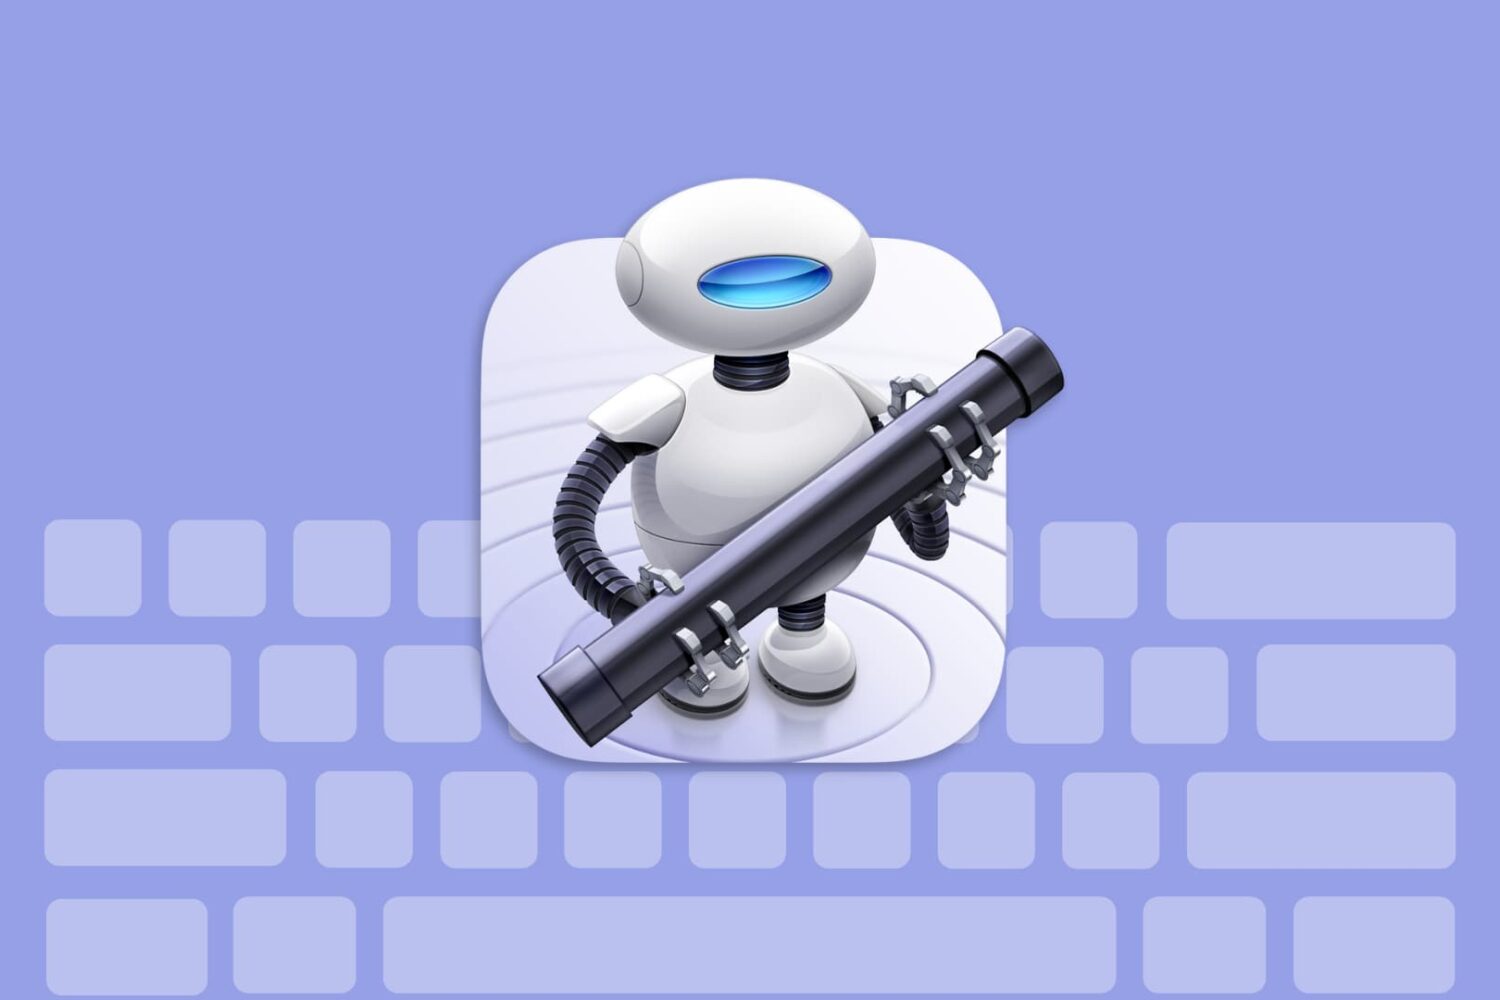 Mac's Automator keyboard shortcuts